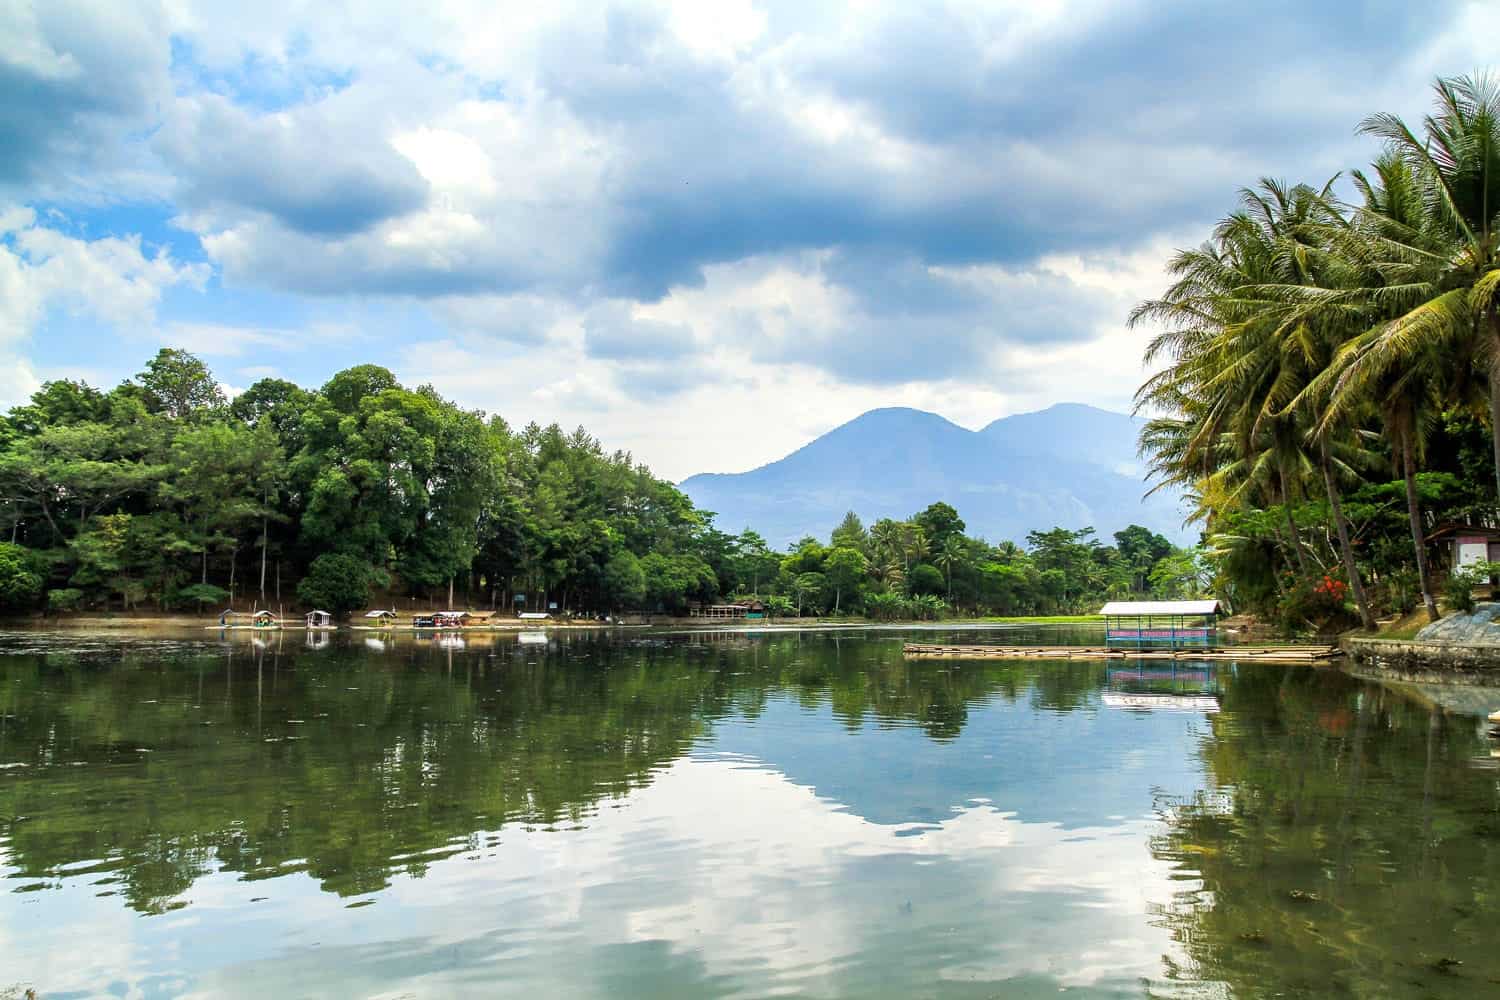 افضل 5 انشطة عند بحيرة سيتو باتينقان باندونق اندونيسيا